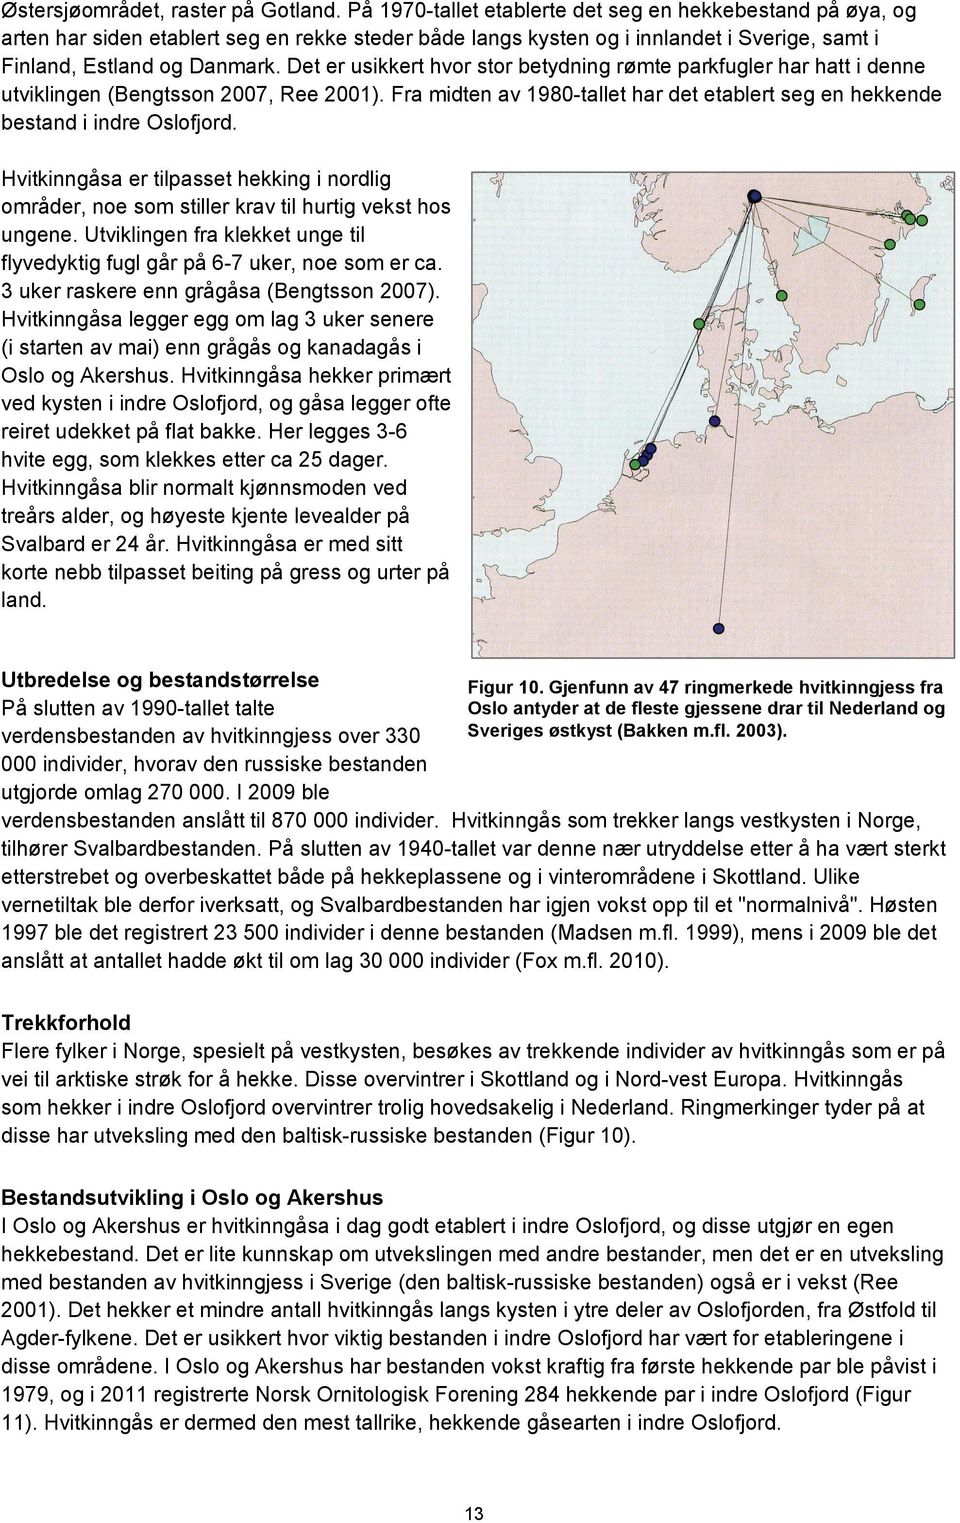 Det er usikkert hvor stor betydning rømte parkfugler har hatt i denne utviklingen (Bengtsson 2007, Ree 2001). Fra midten av 1980-tallet har det etablert seg en hekkende bestand i indre Oslofjord.